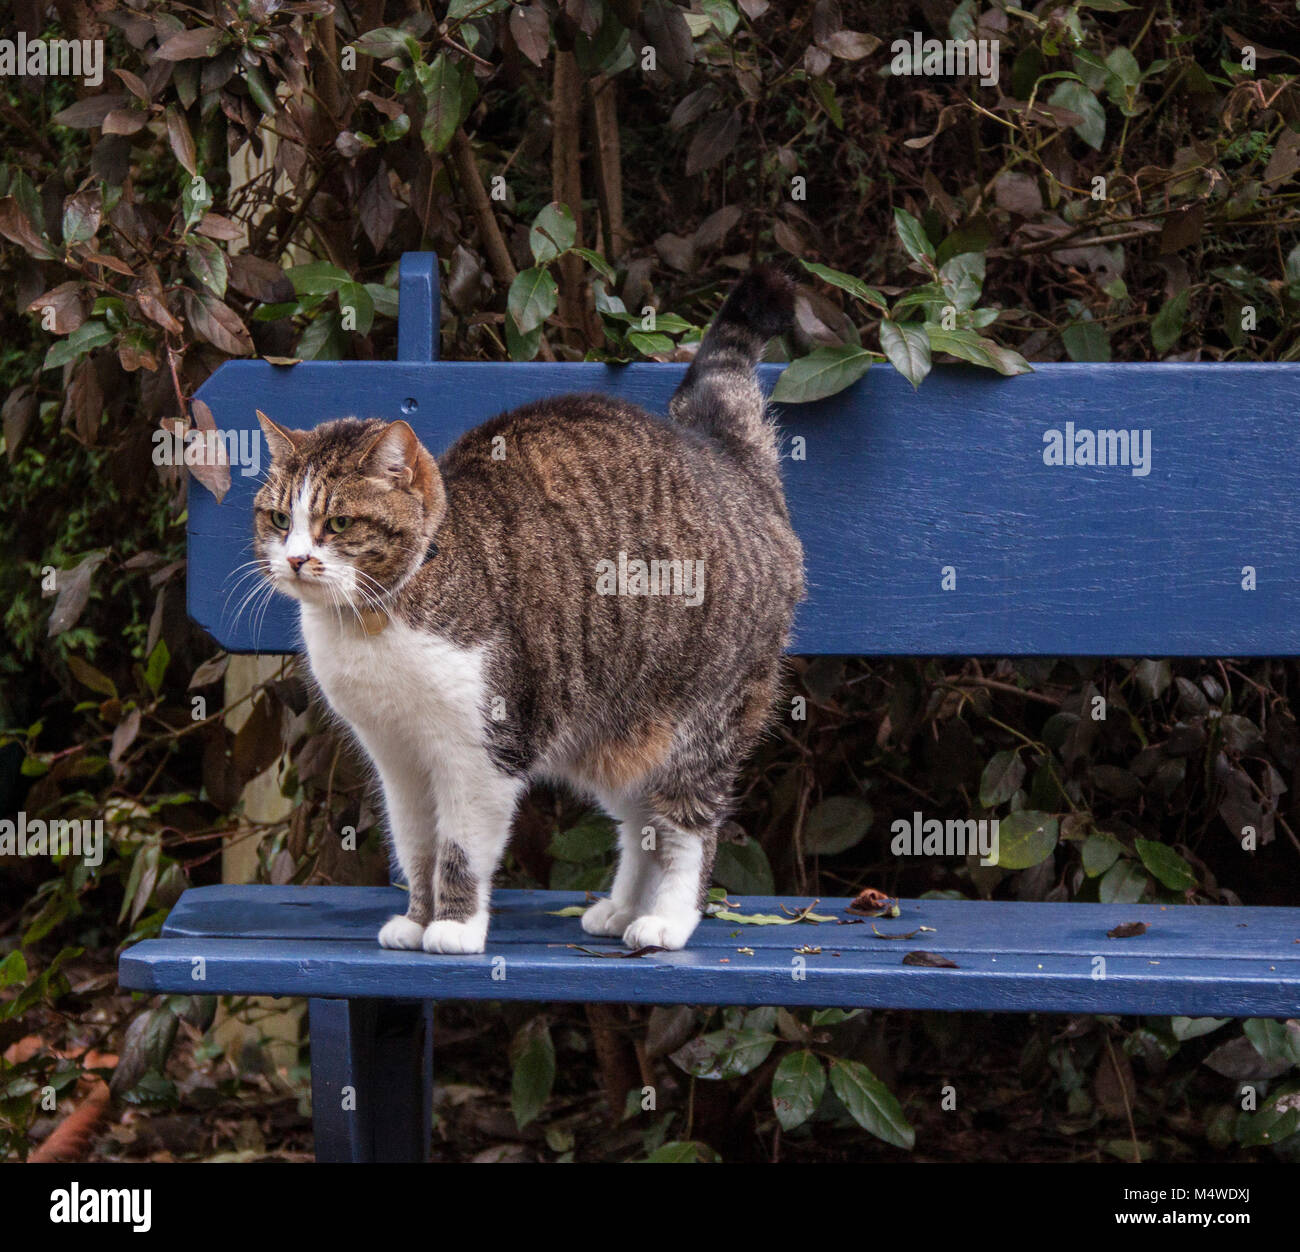 Gato atigrado de pie sobre un banco de jardín pintados de azul Foto de stock